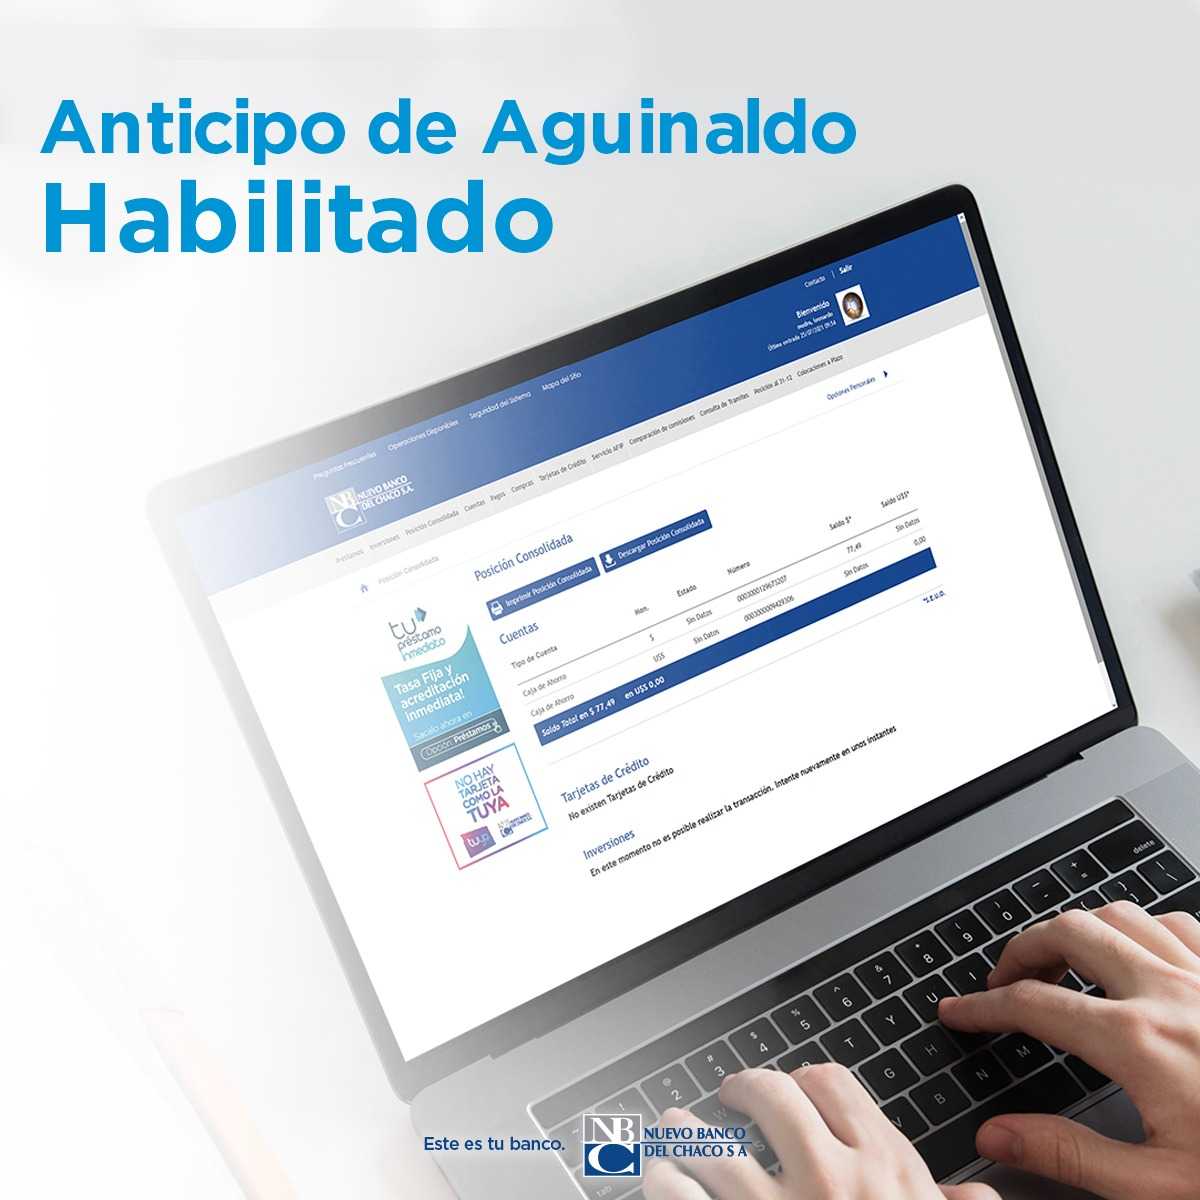 Nuevo_Banco_del_Chaco_habilitó_el_anticipo_de_aguinaldo